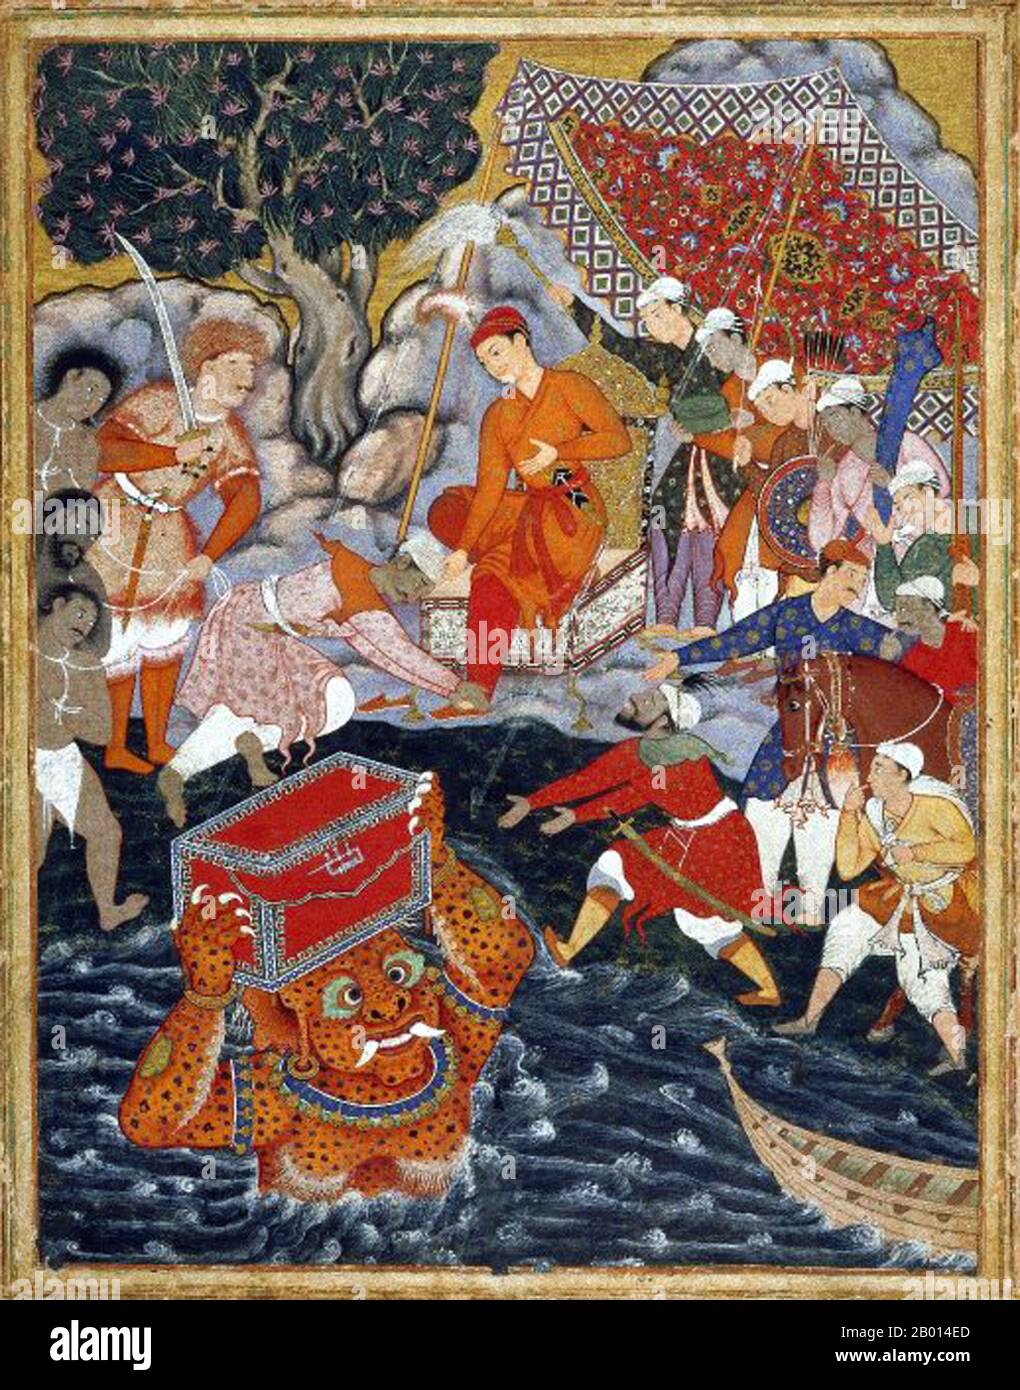 India: 'Arghan Div porta il torace dell'armatura a Hamza'. Gouache e dipinto d'oro raffigurante una scena del Hamzanama, c. 1562-1577. L'Hamzanama o Dastan-e-Amir Hamza (avventure di Amir Hamza) narra le mitiche imprese di Amir Hamza, lo zio del profeta dell'Islam. La maggior parte della storia è estremamente fantasiosa, descritta in modo memorabile dal primo imperatore Moghul Babur come: 'Una lunga menzogna lunghissima, opposta al senso e alla natura'. Eppure gli Hamzanama si dimostrarono estremamente popolari con il nipote di Babur, il terzo imperatore Mughal Akbar, che commissionò una magnifica versione illustrata dell'epica. Foto Stock